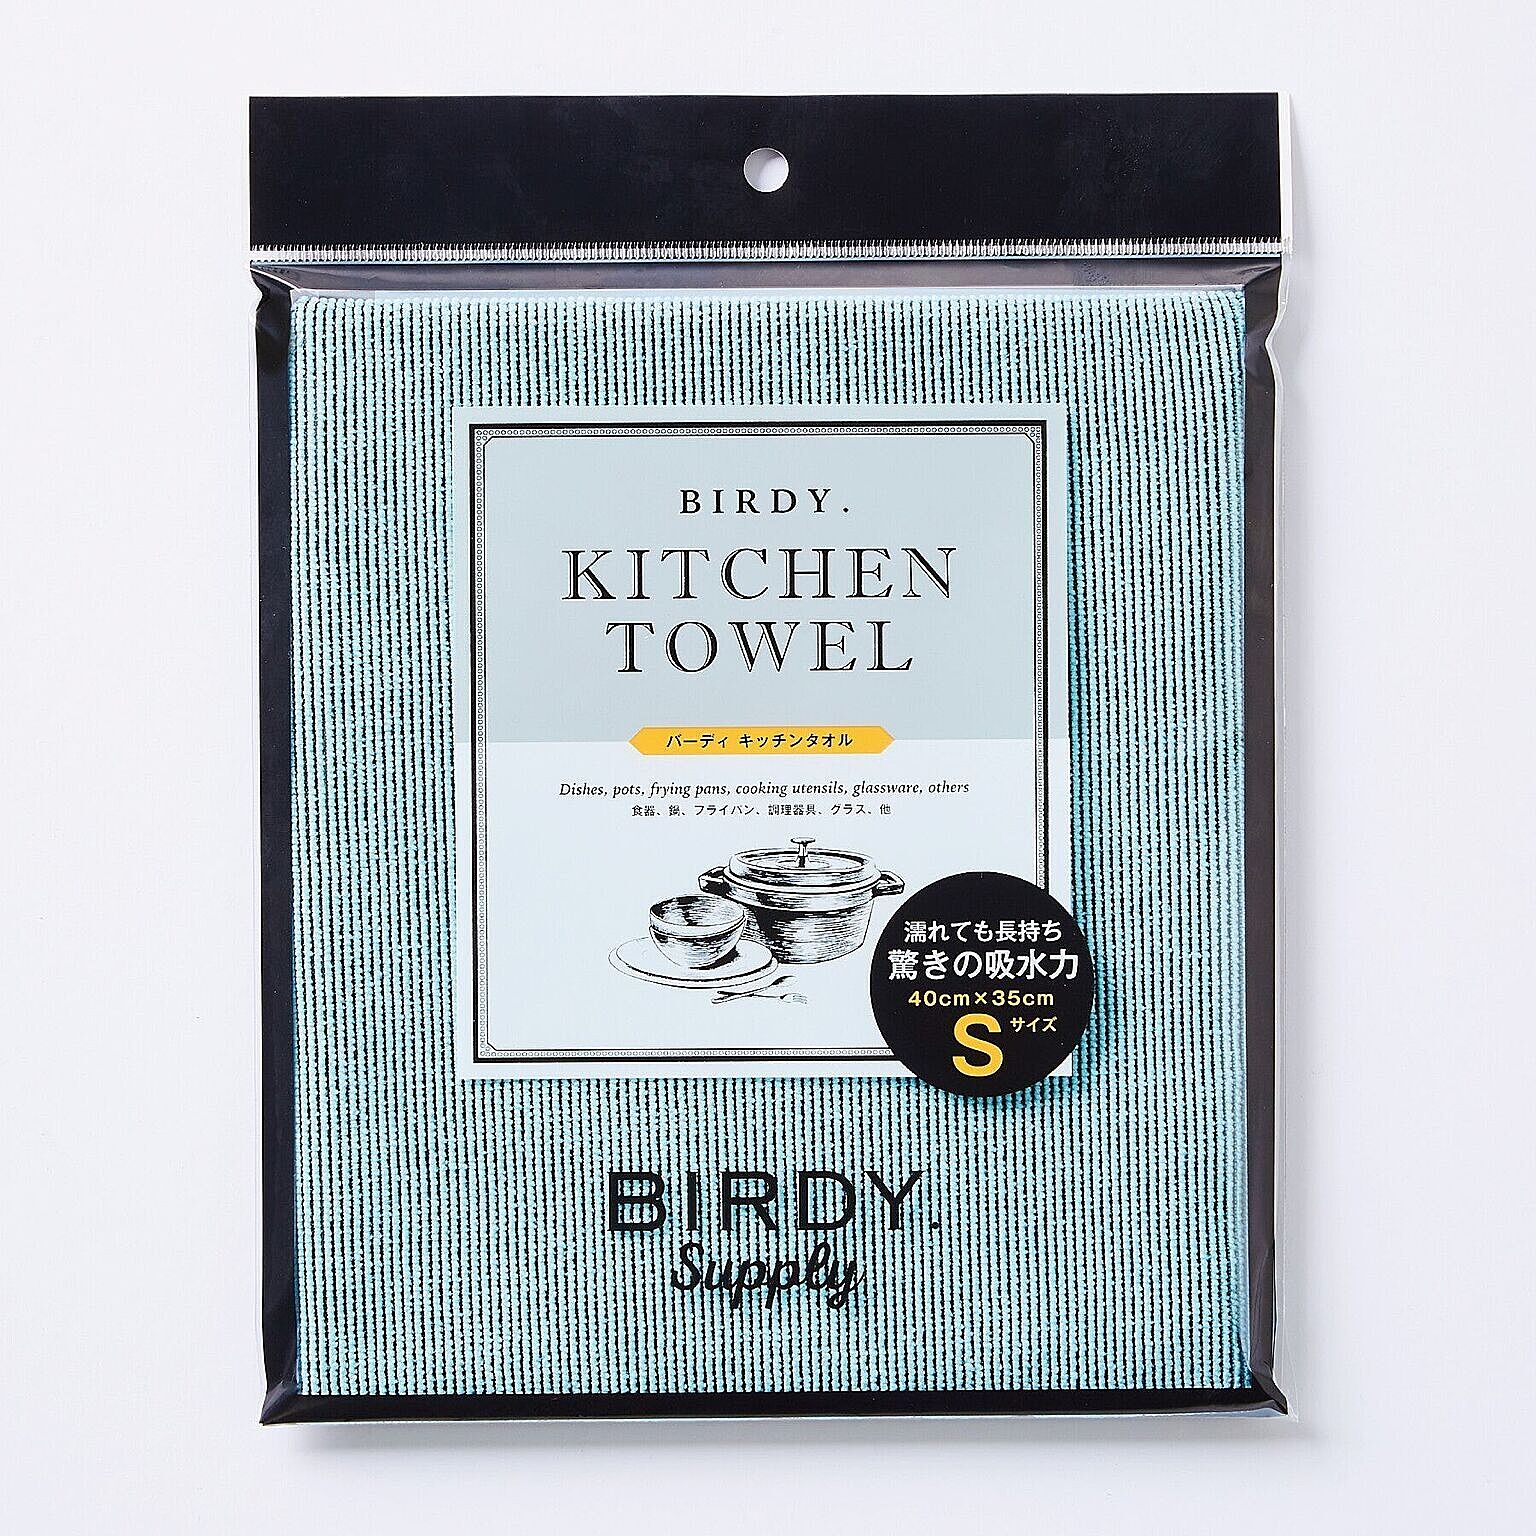 バーディ キッチンタオル (Birdy Kitchentowel)